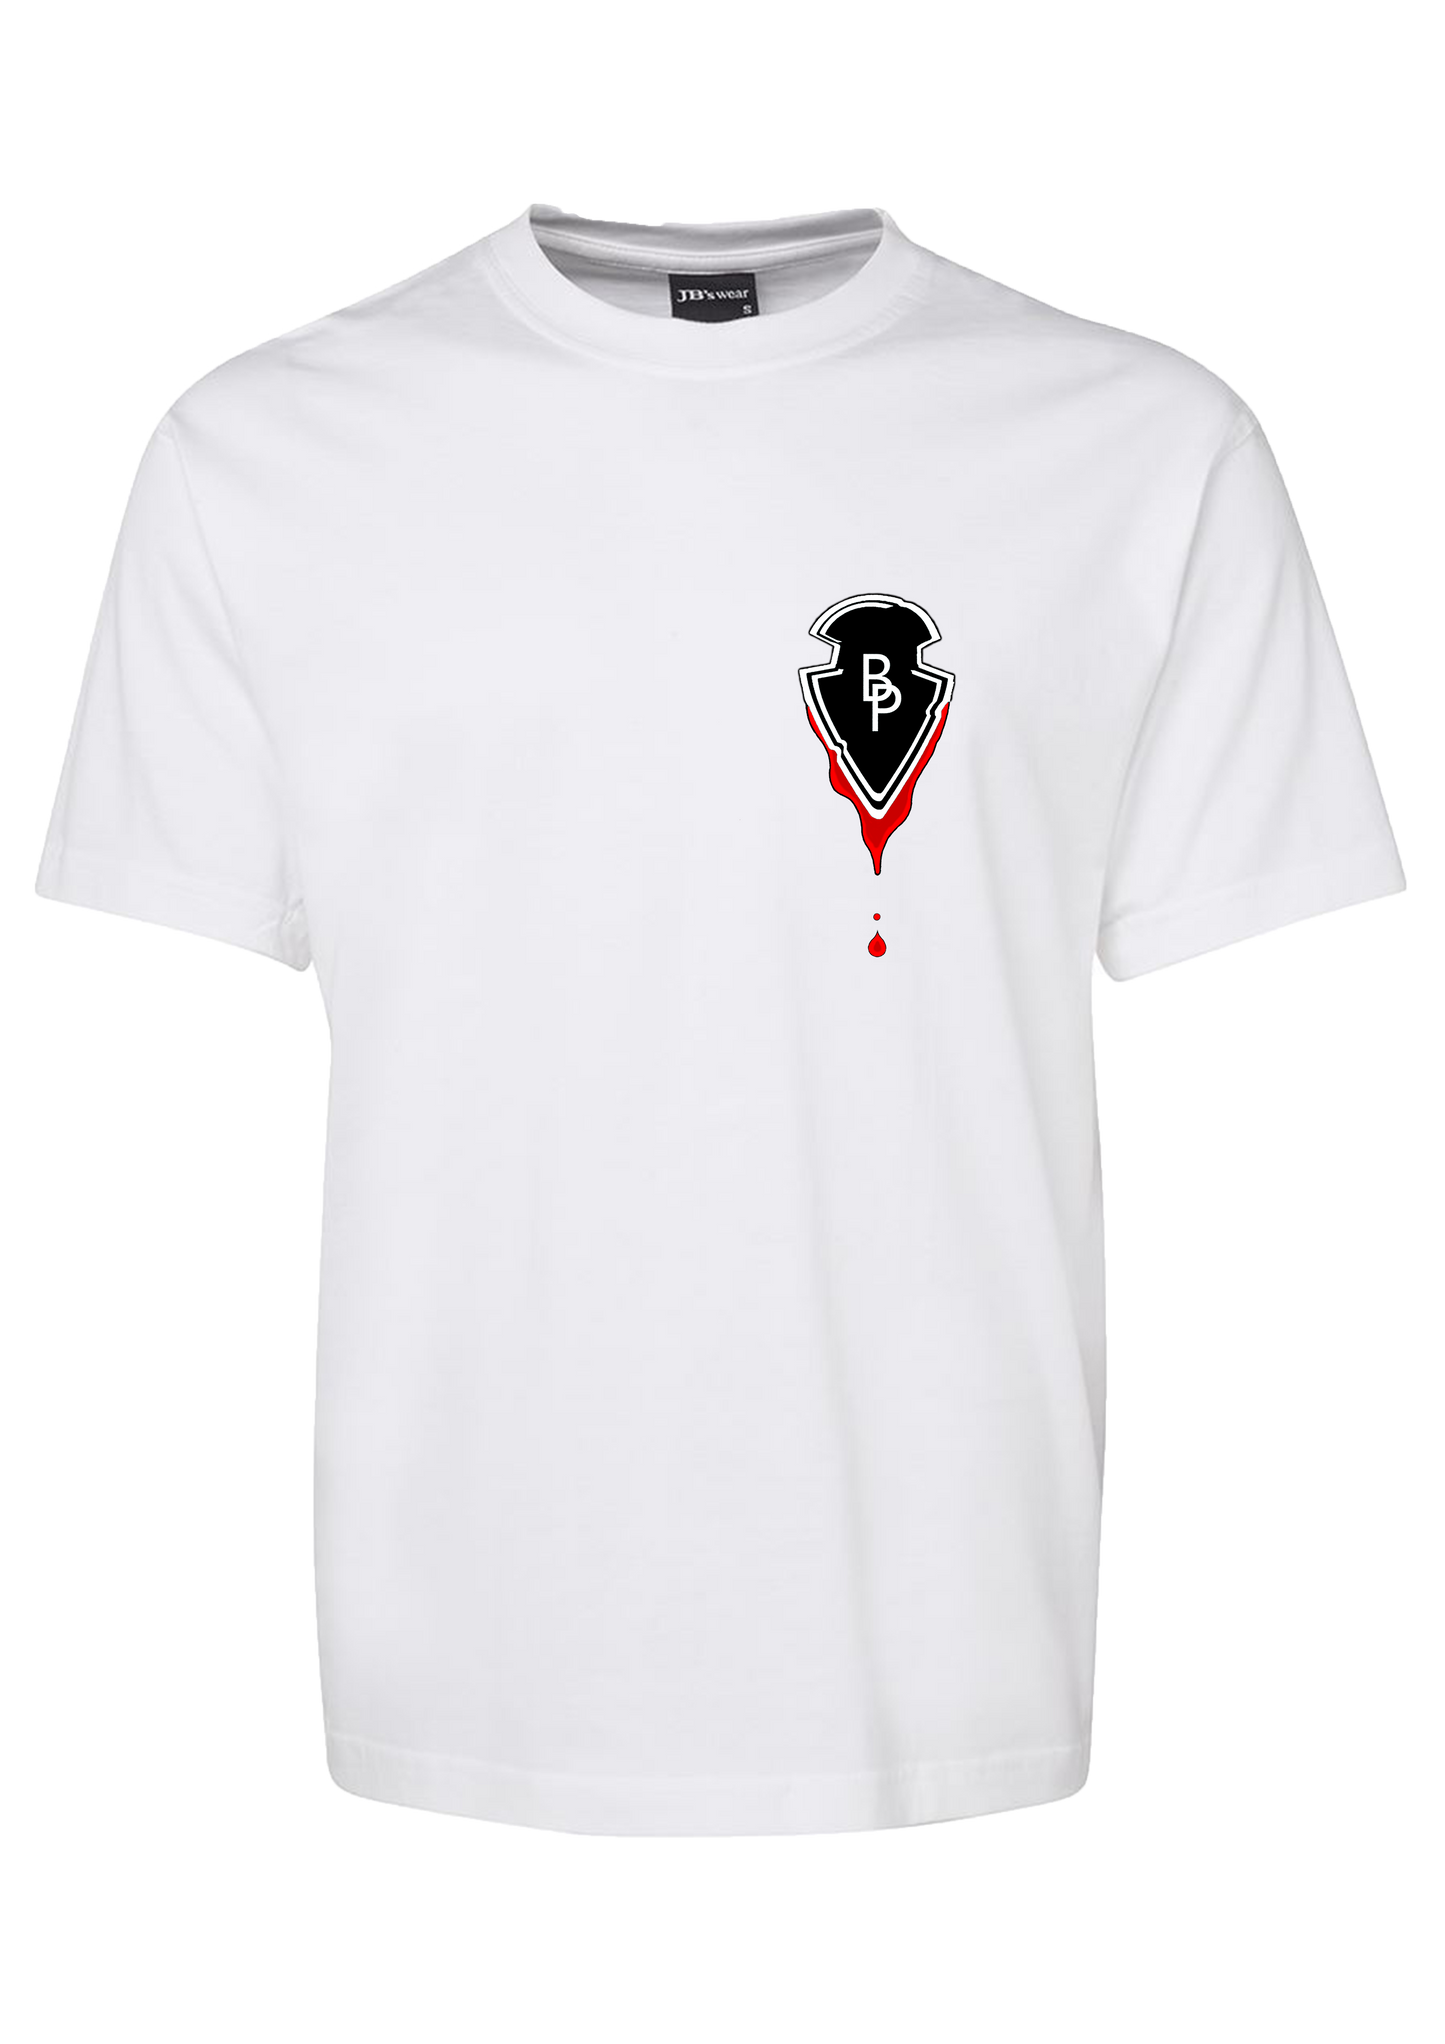 Blood arrow T-shirt